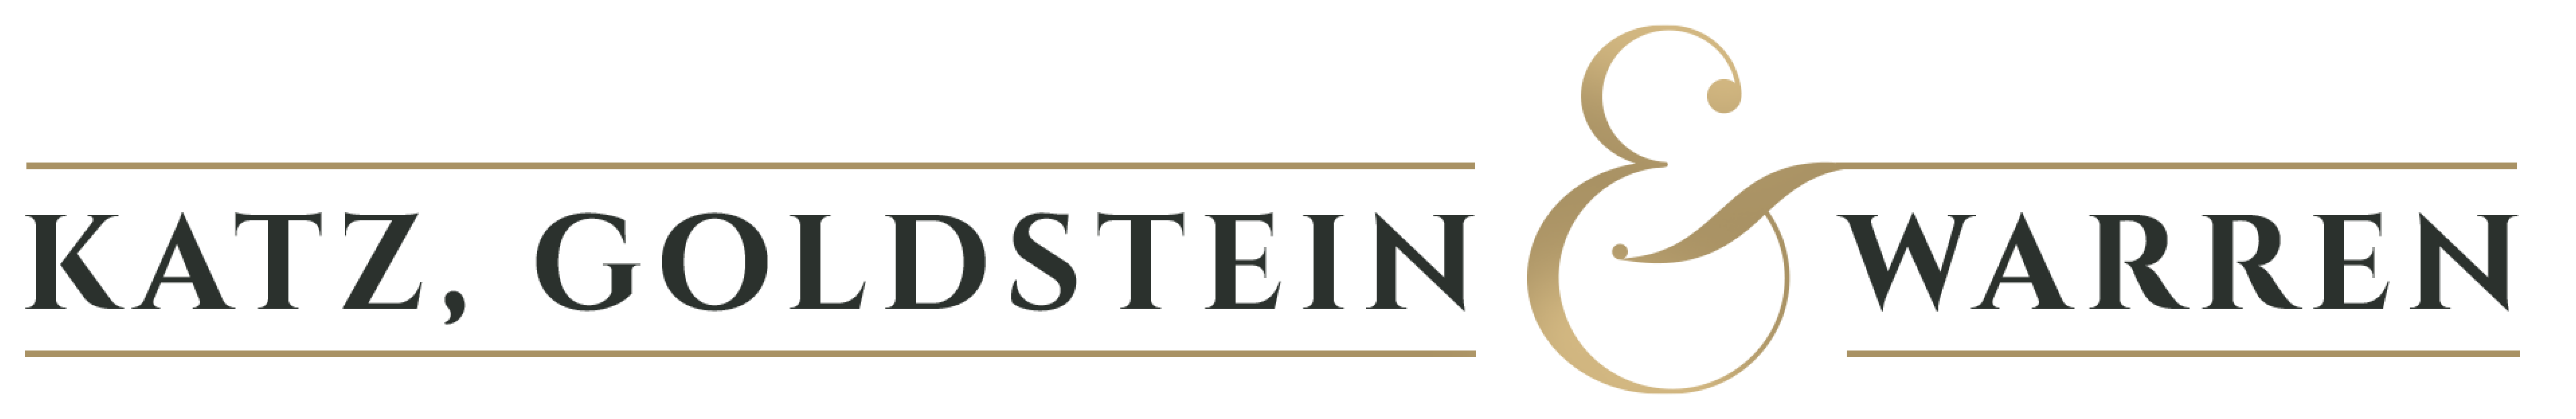 Firm Logo